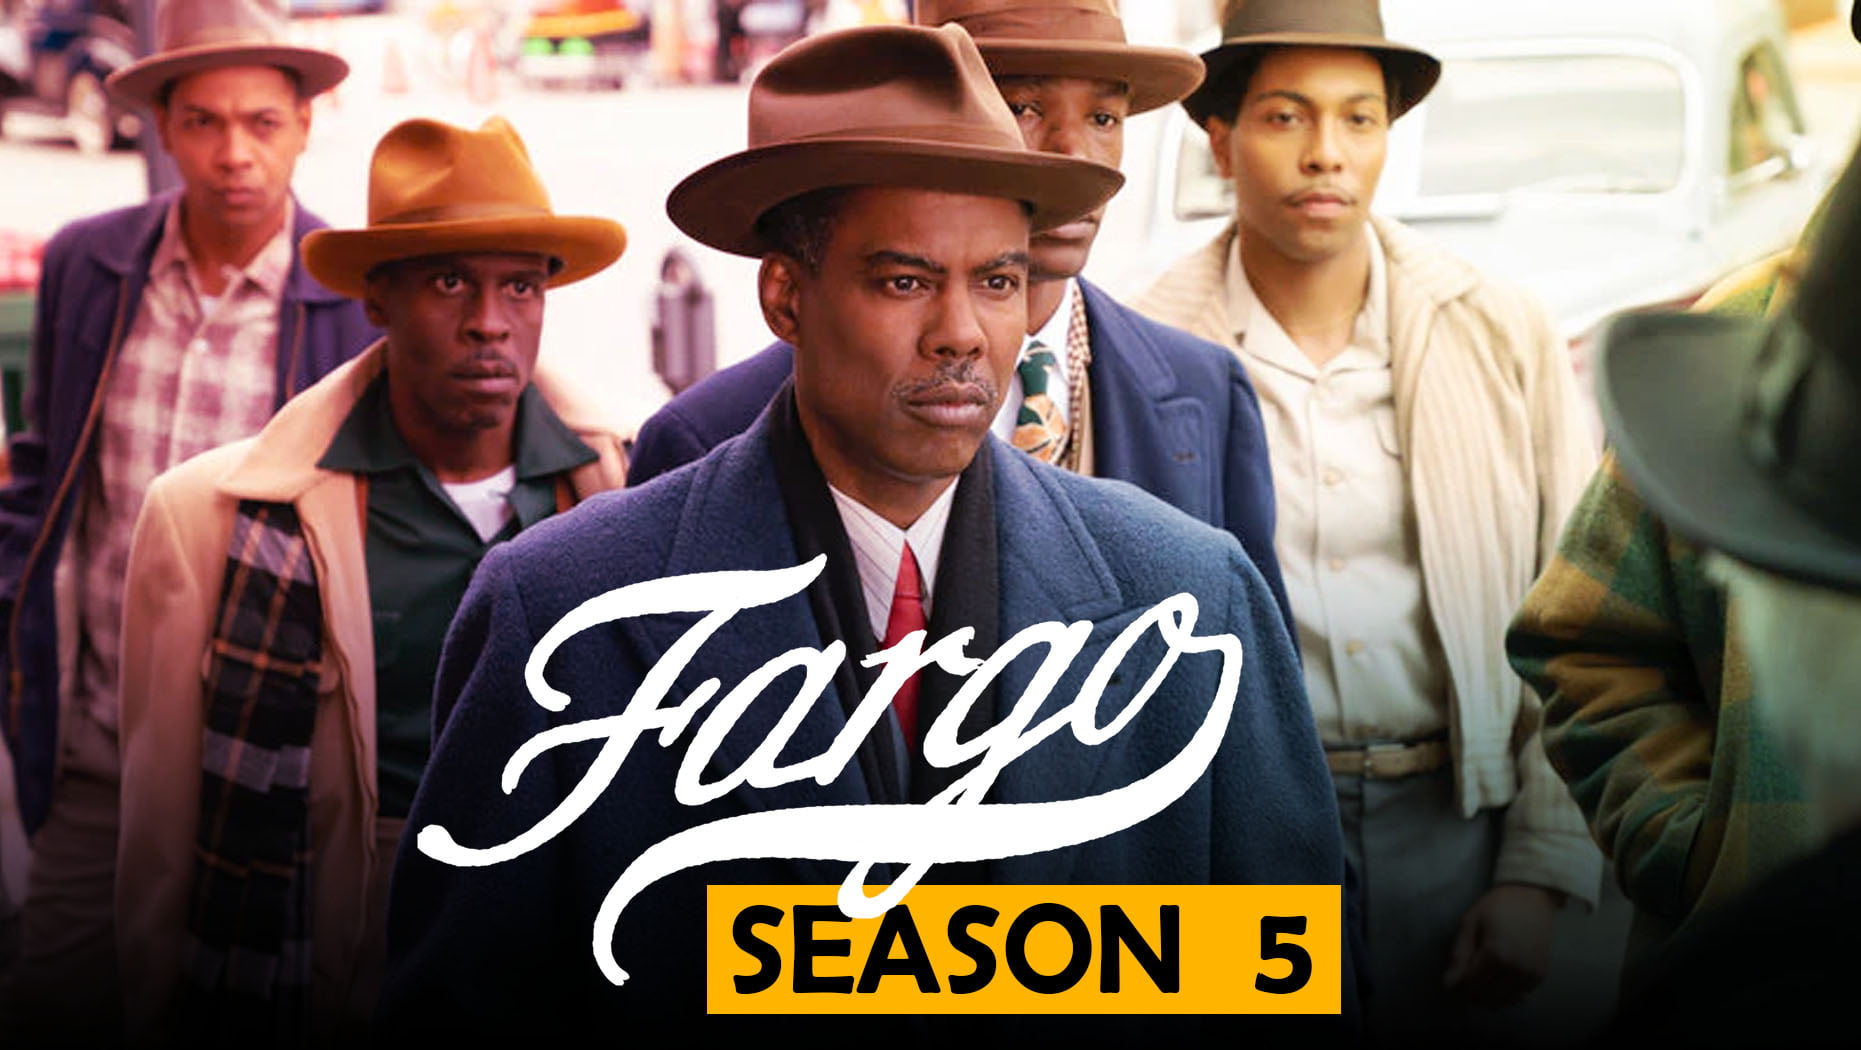 fargo season 5